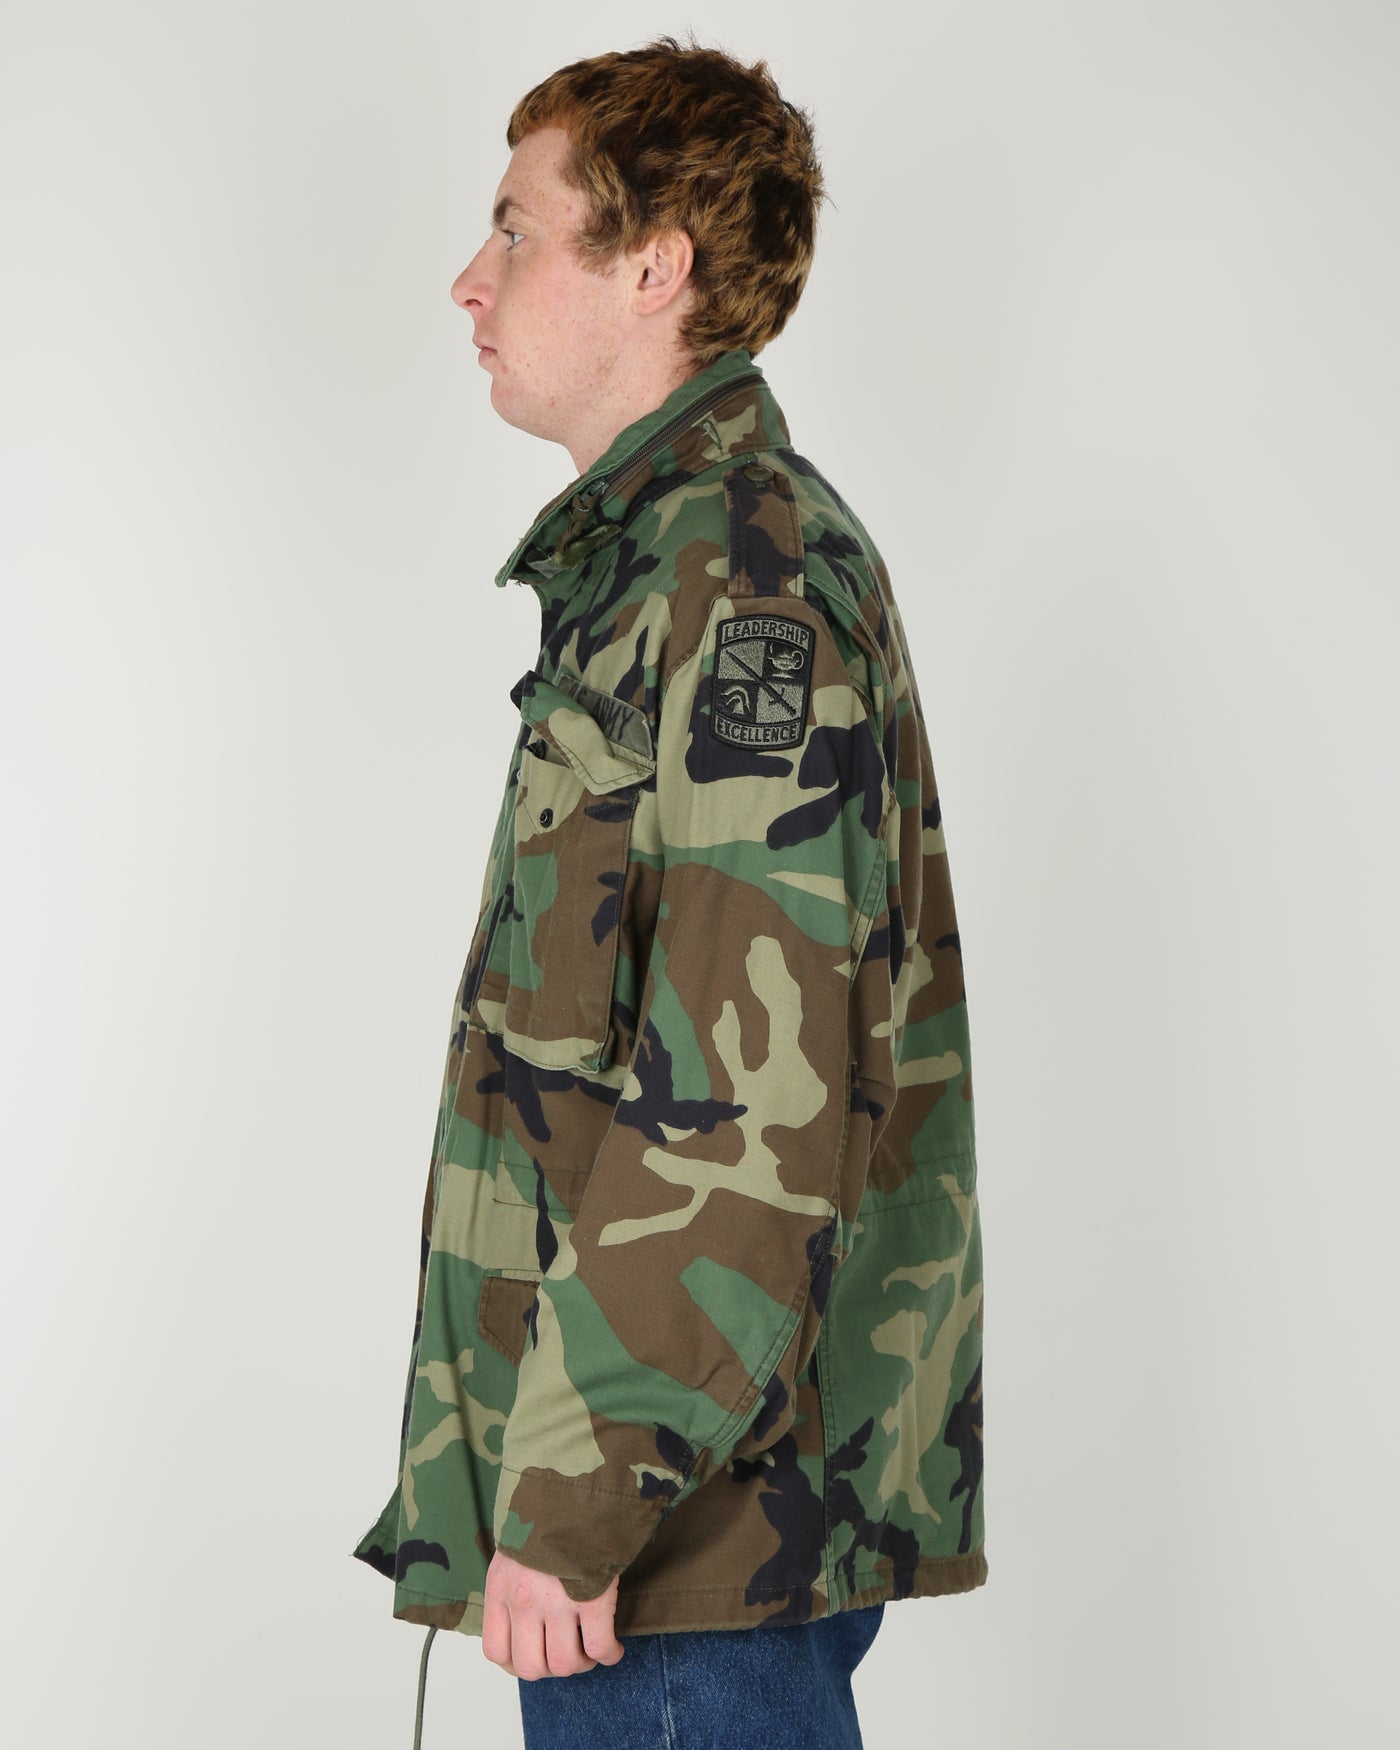 1996 Vintage US Army M81 Woodland Camouflage M65 Field Jacket - Medium / Regular